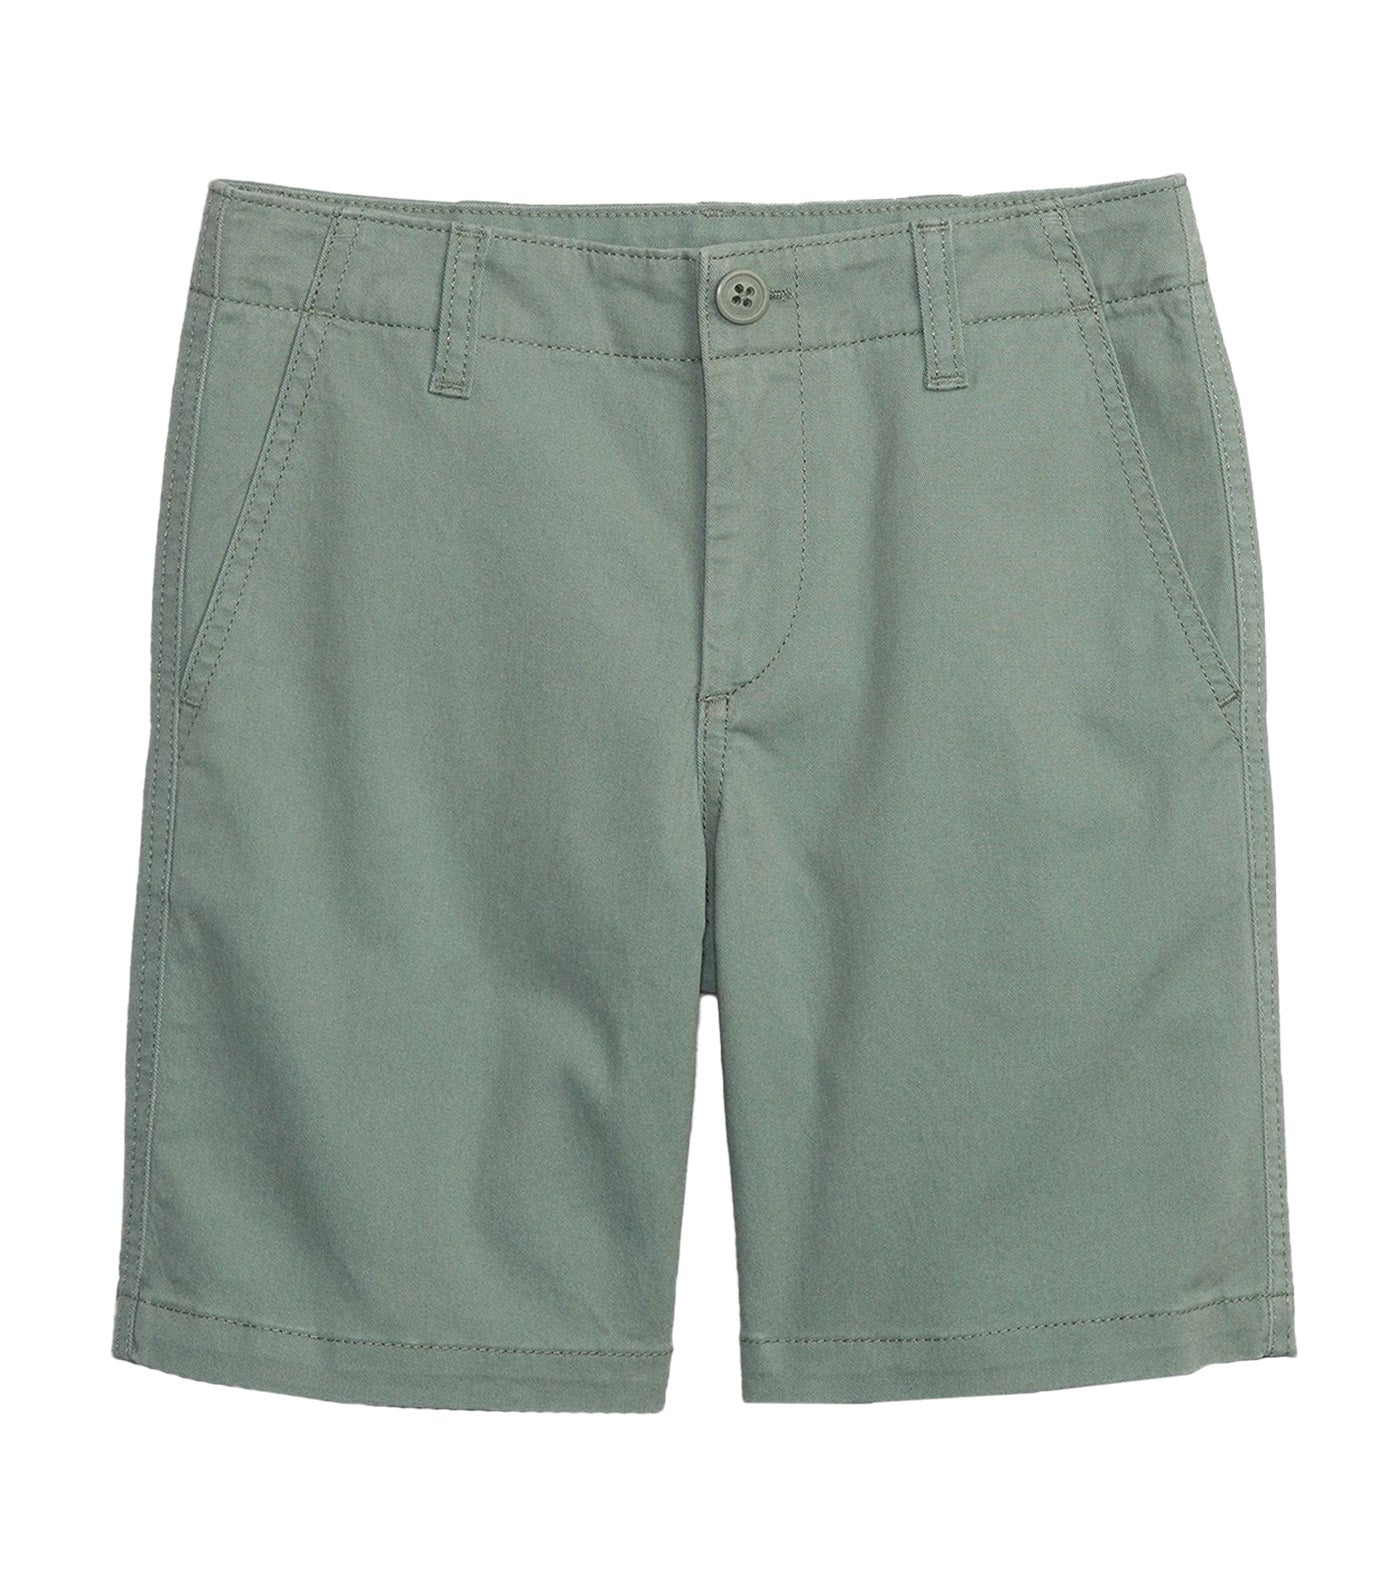 Khaki Shorts with Washwell - Sage